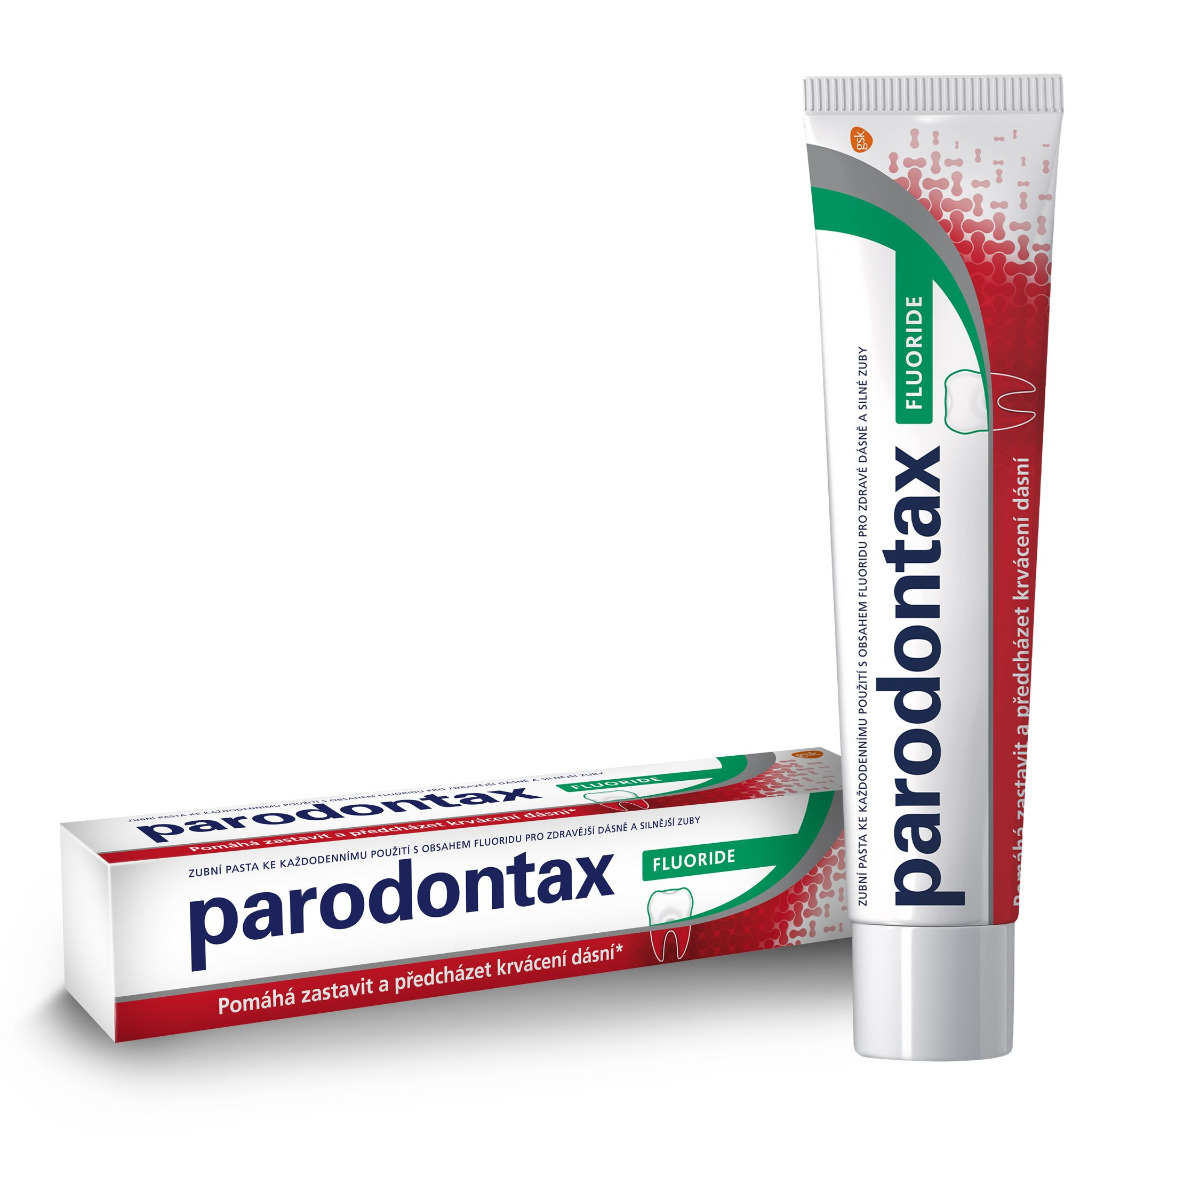 Parodontax Fluoride zubní pasta 75 ml Parodontax